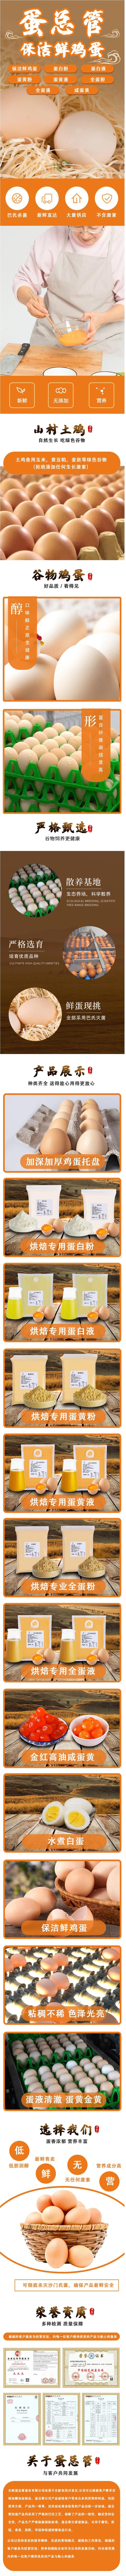 散养土鸡蛋-红壳谷物蛋-厂家严格挑选-新鲜营养-蛋总管-批量供货.jpg